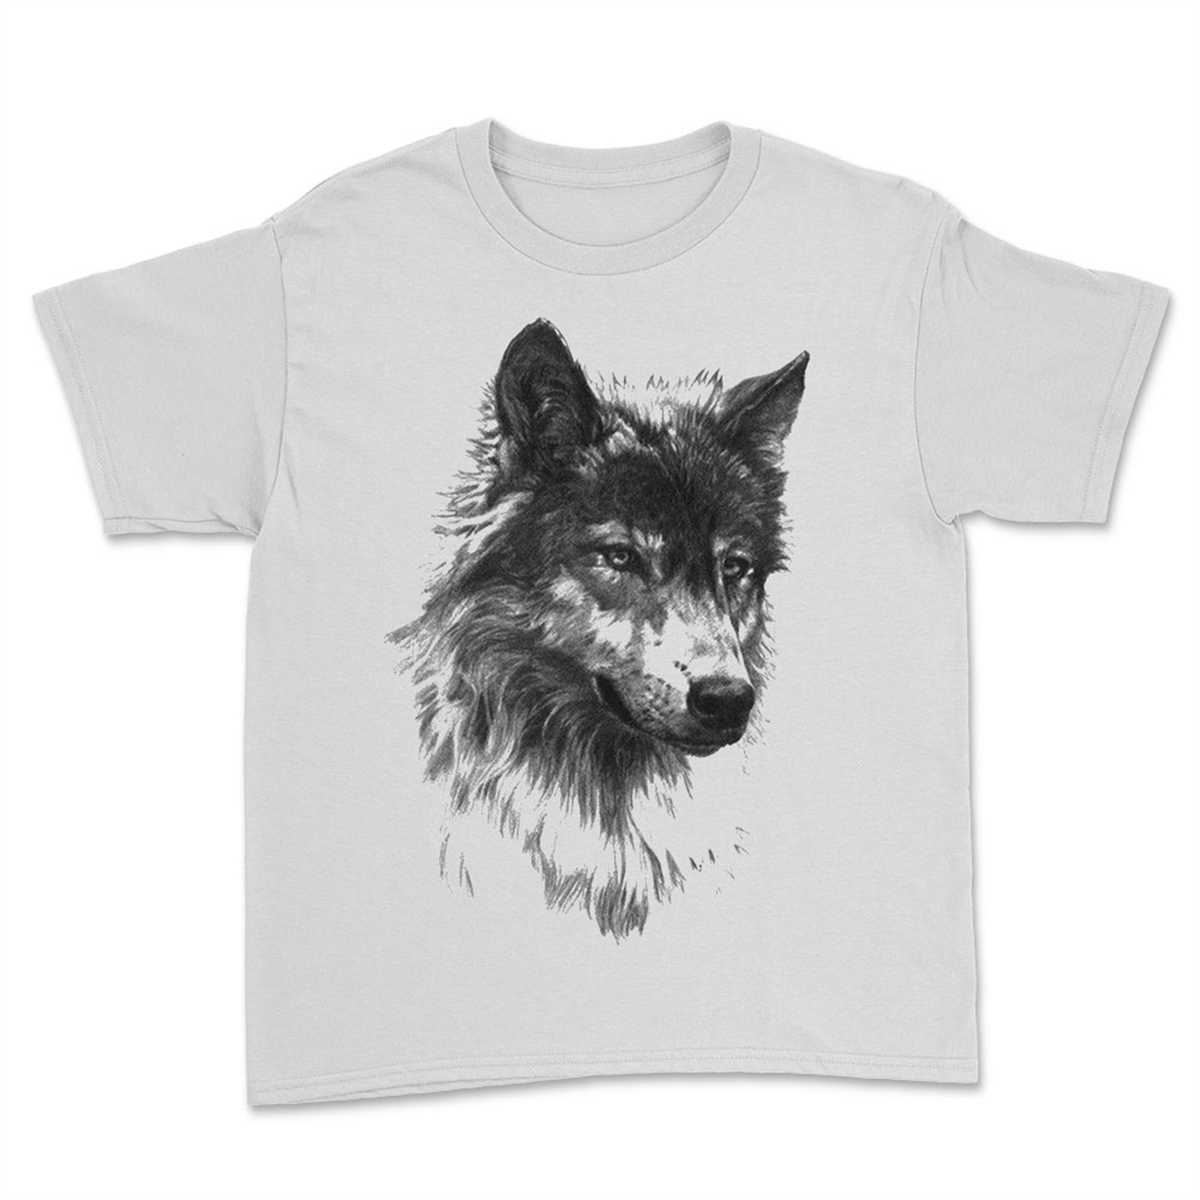 Kurt Baskılı Tasarım Unisex Tişört - Kurt T-Shirt